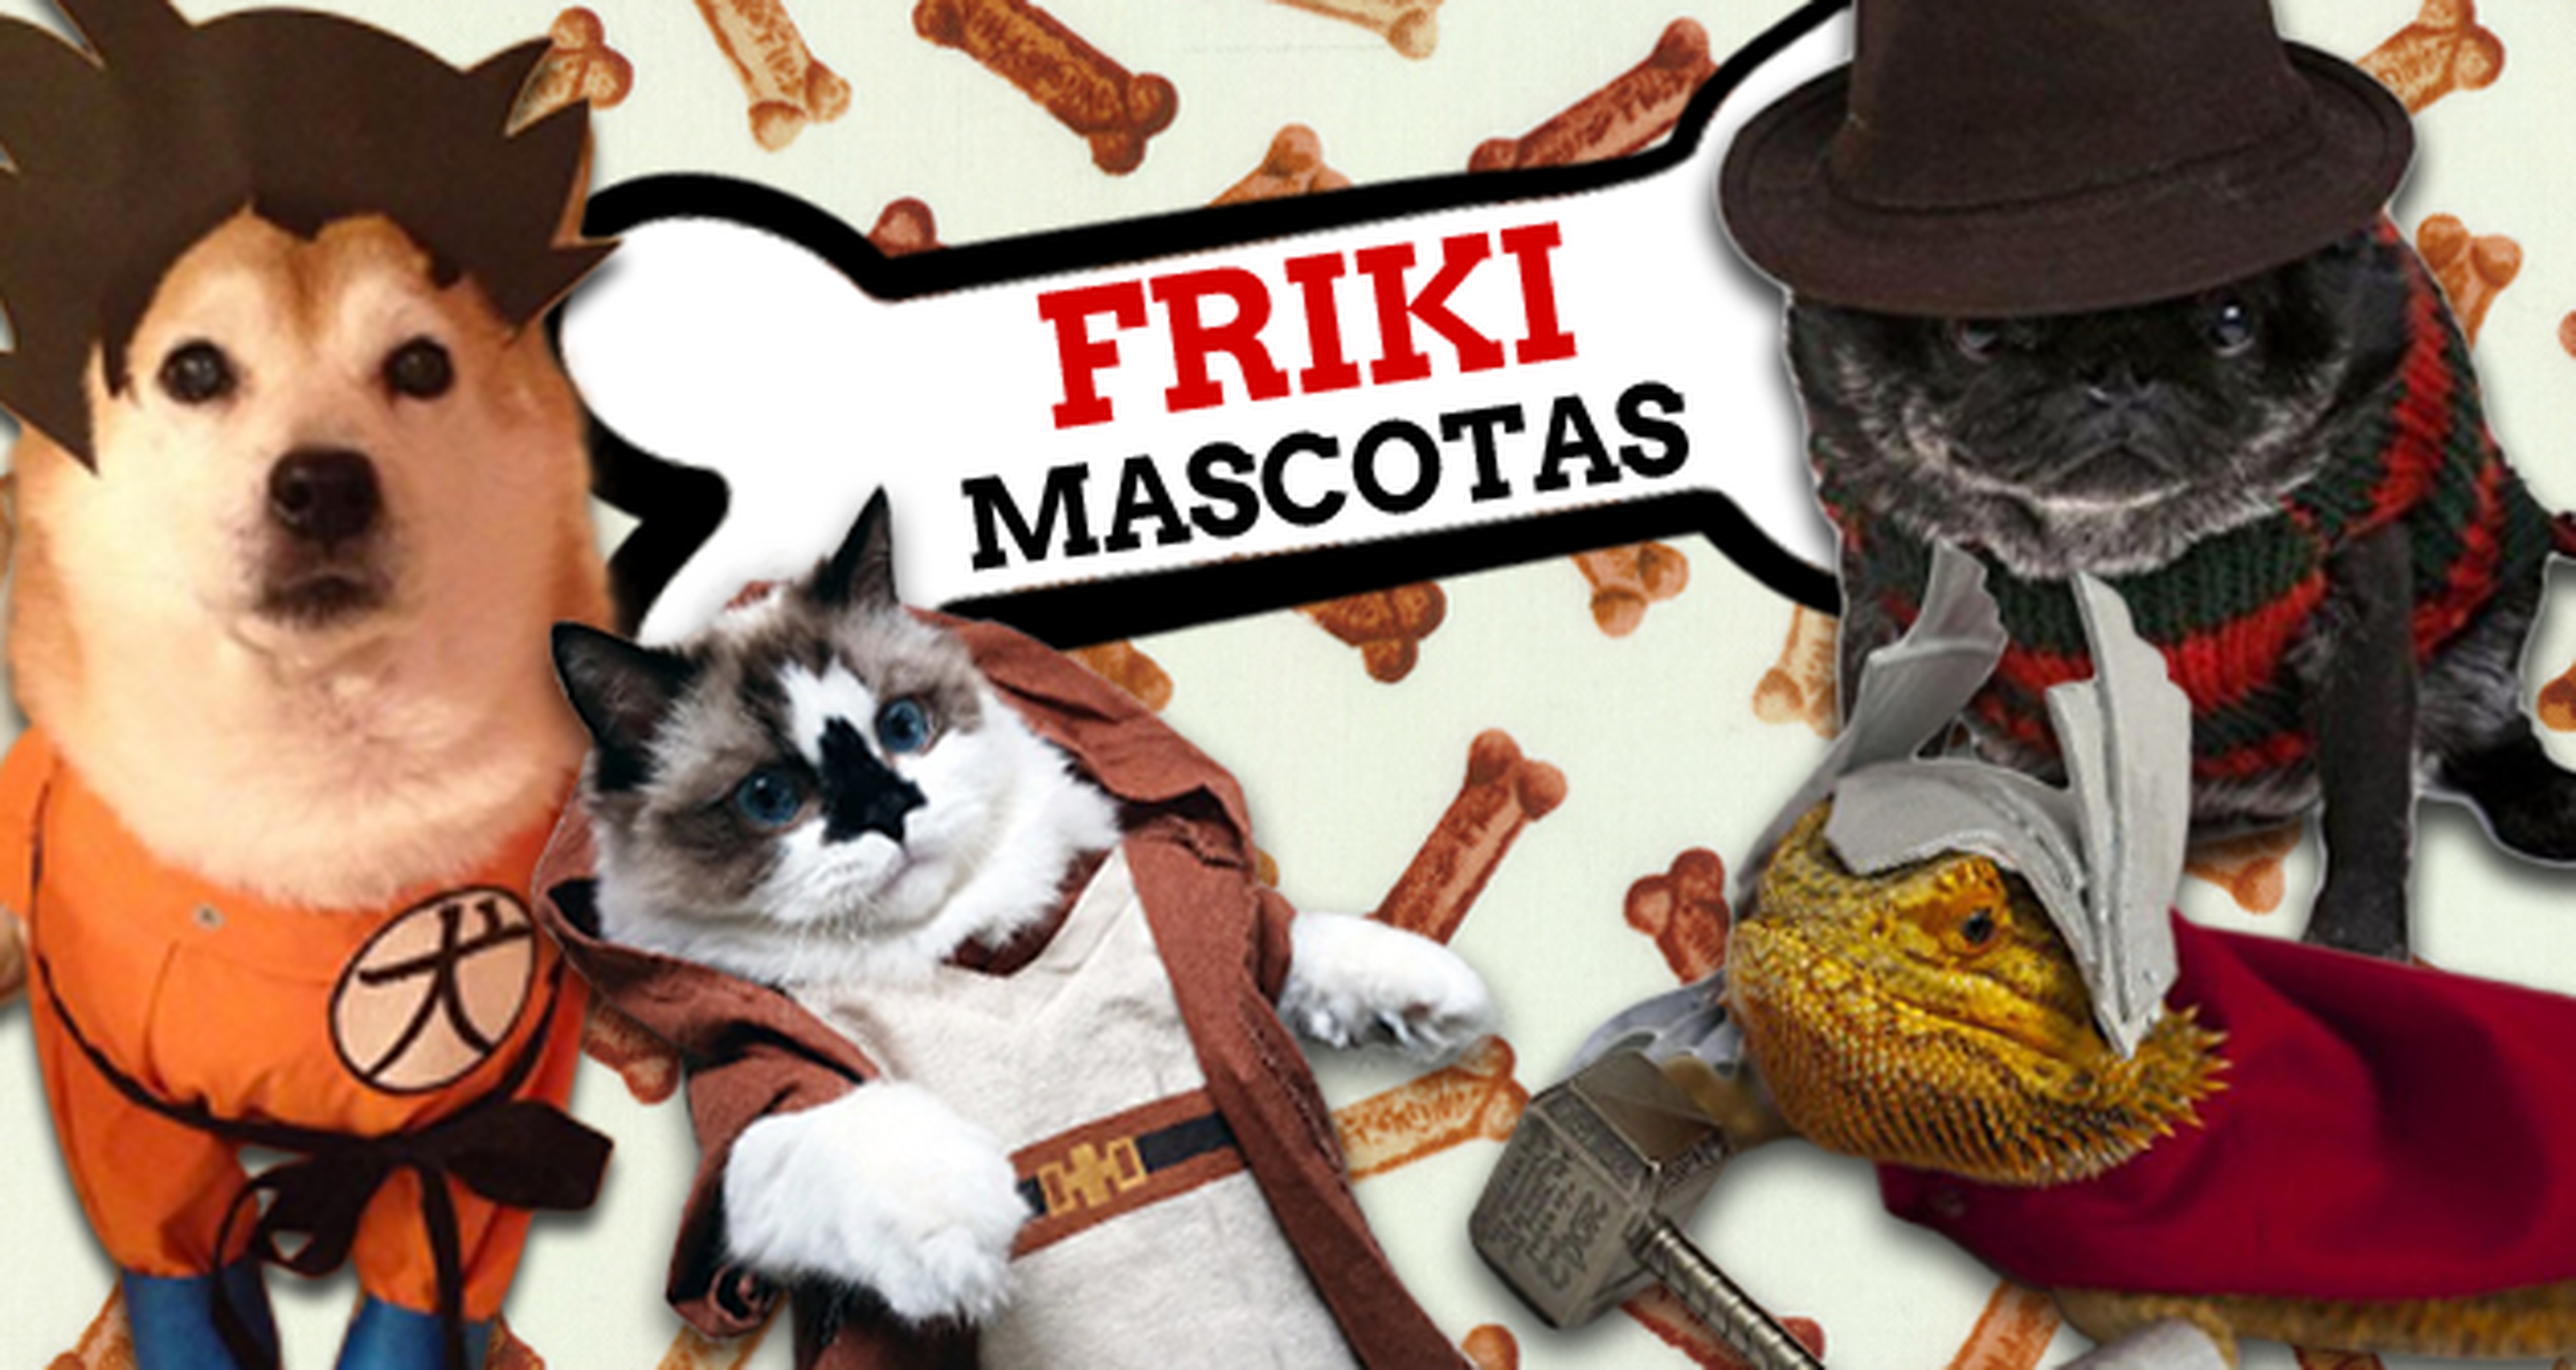 Friki mascotas II, cosplay de animales